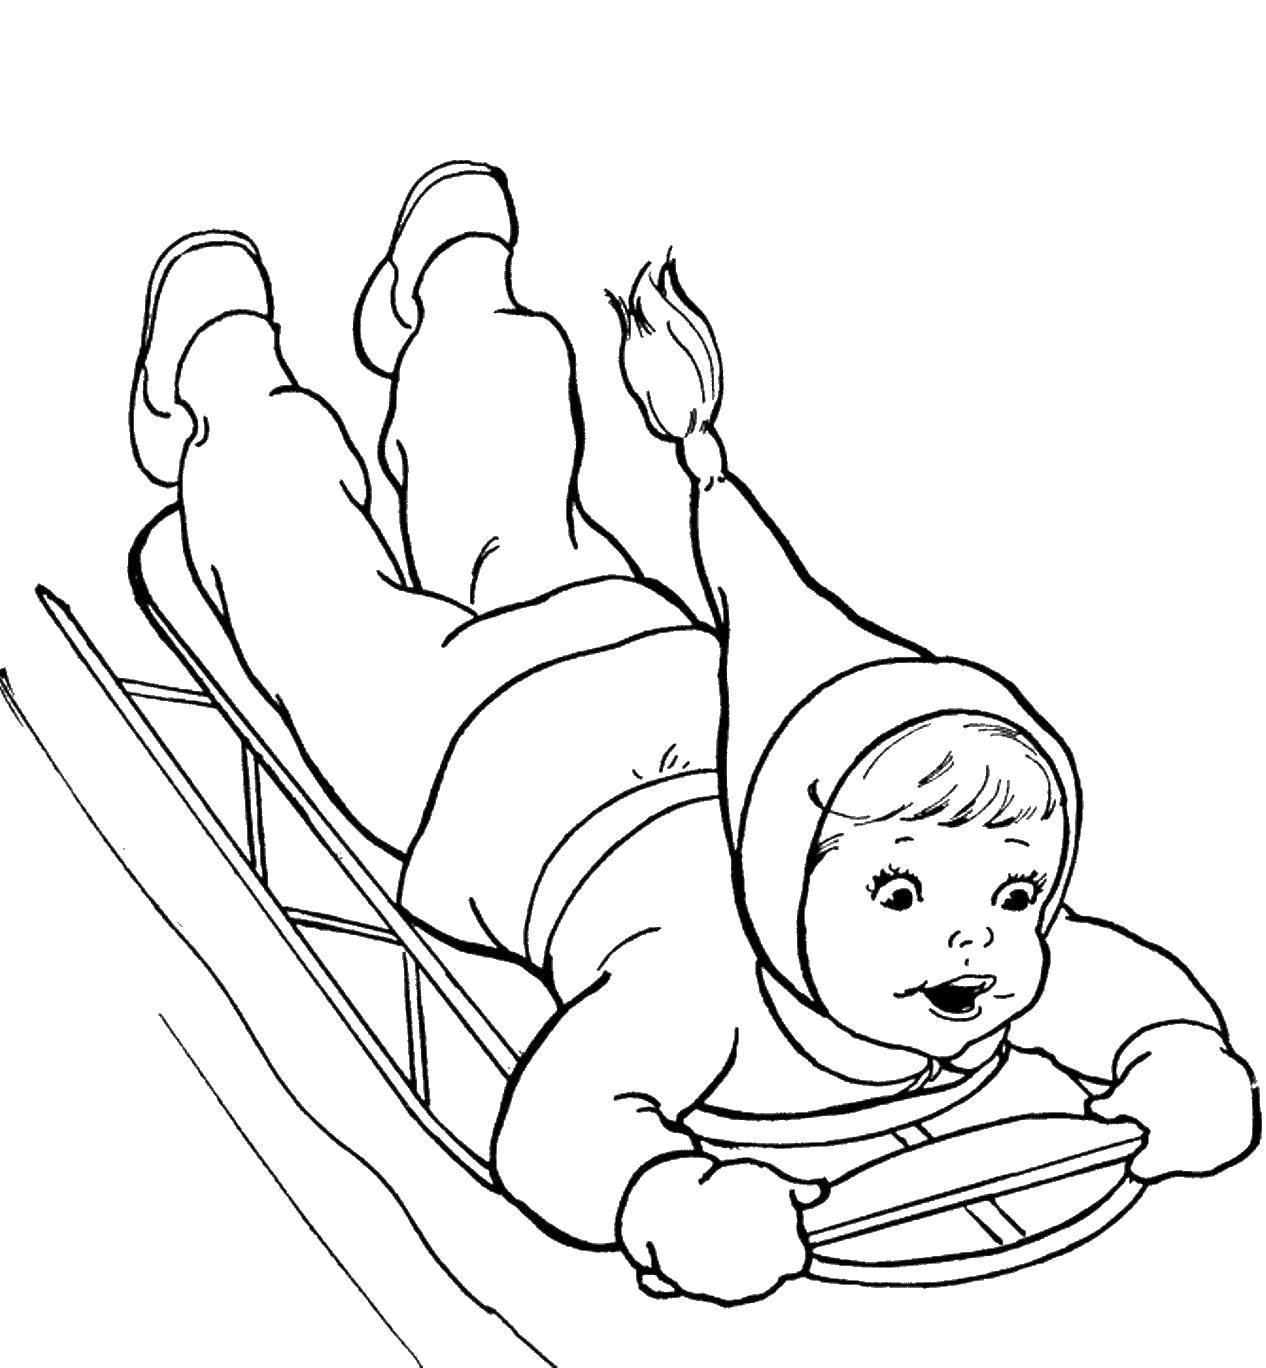 Название: Раскраска Ребенок катается на санках. Категория: зима. Теги: зима, санки, ребенок.